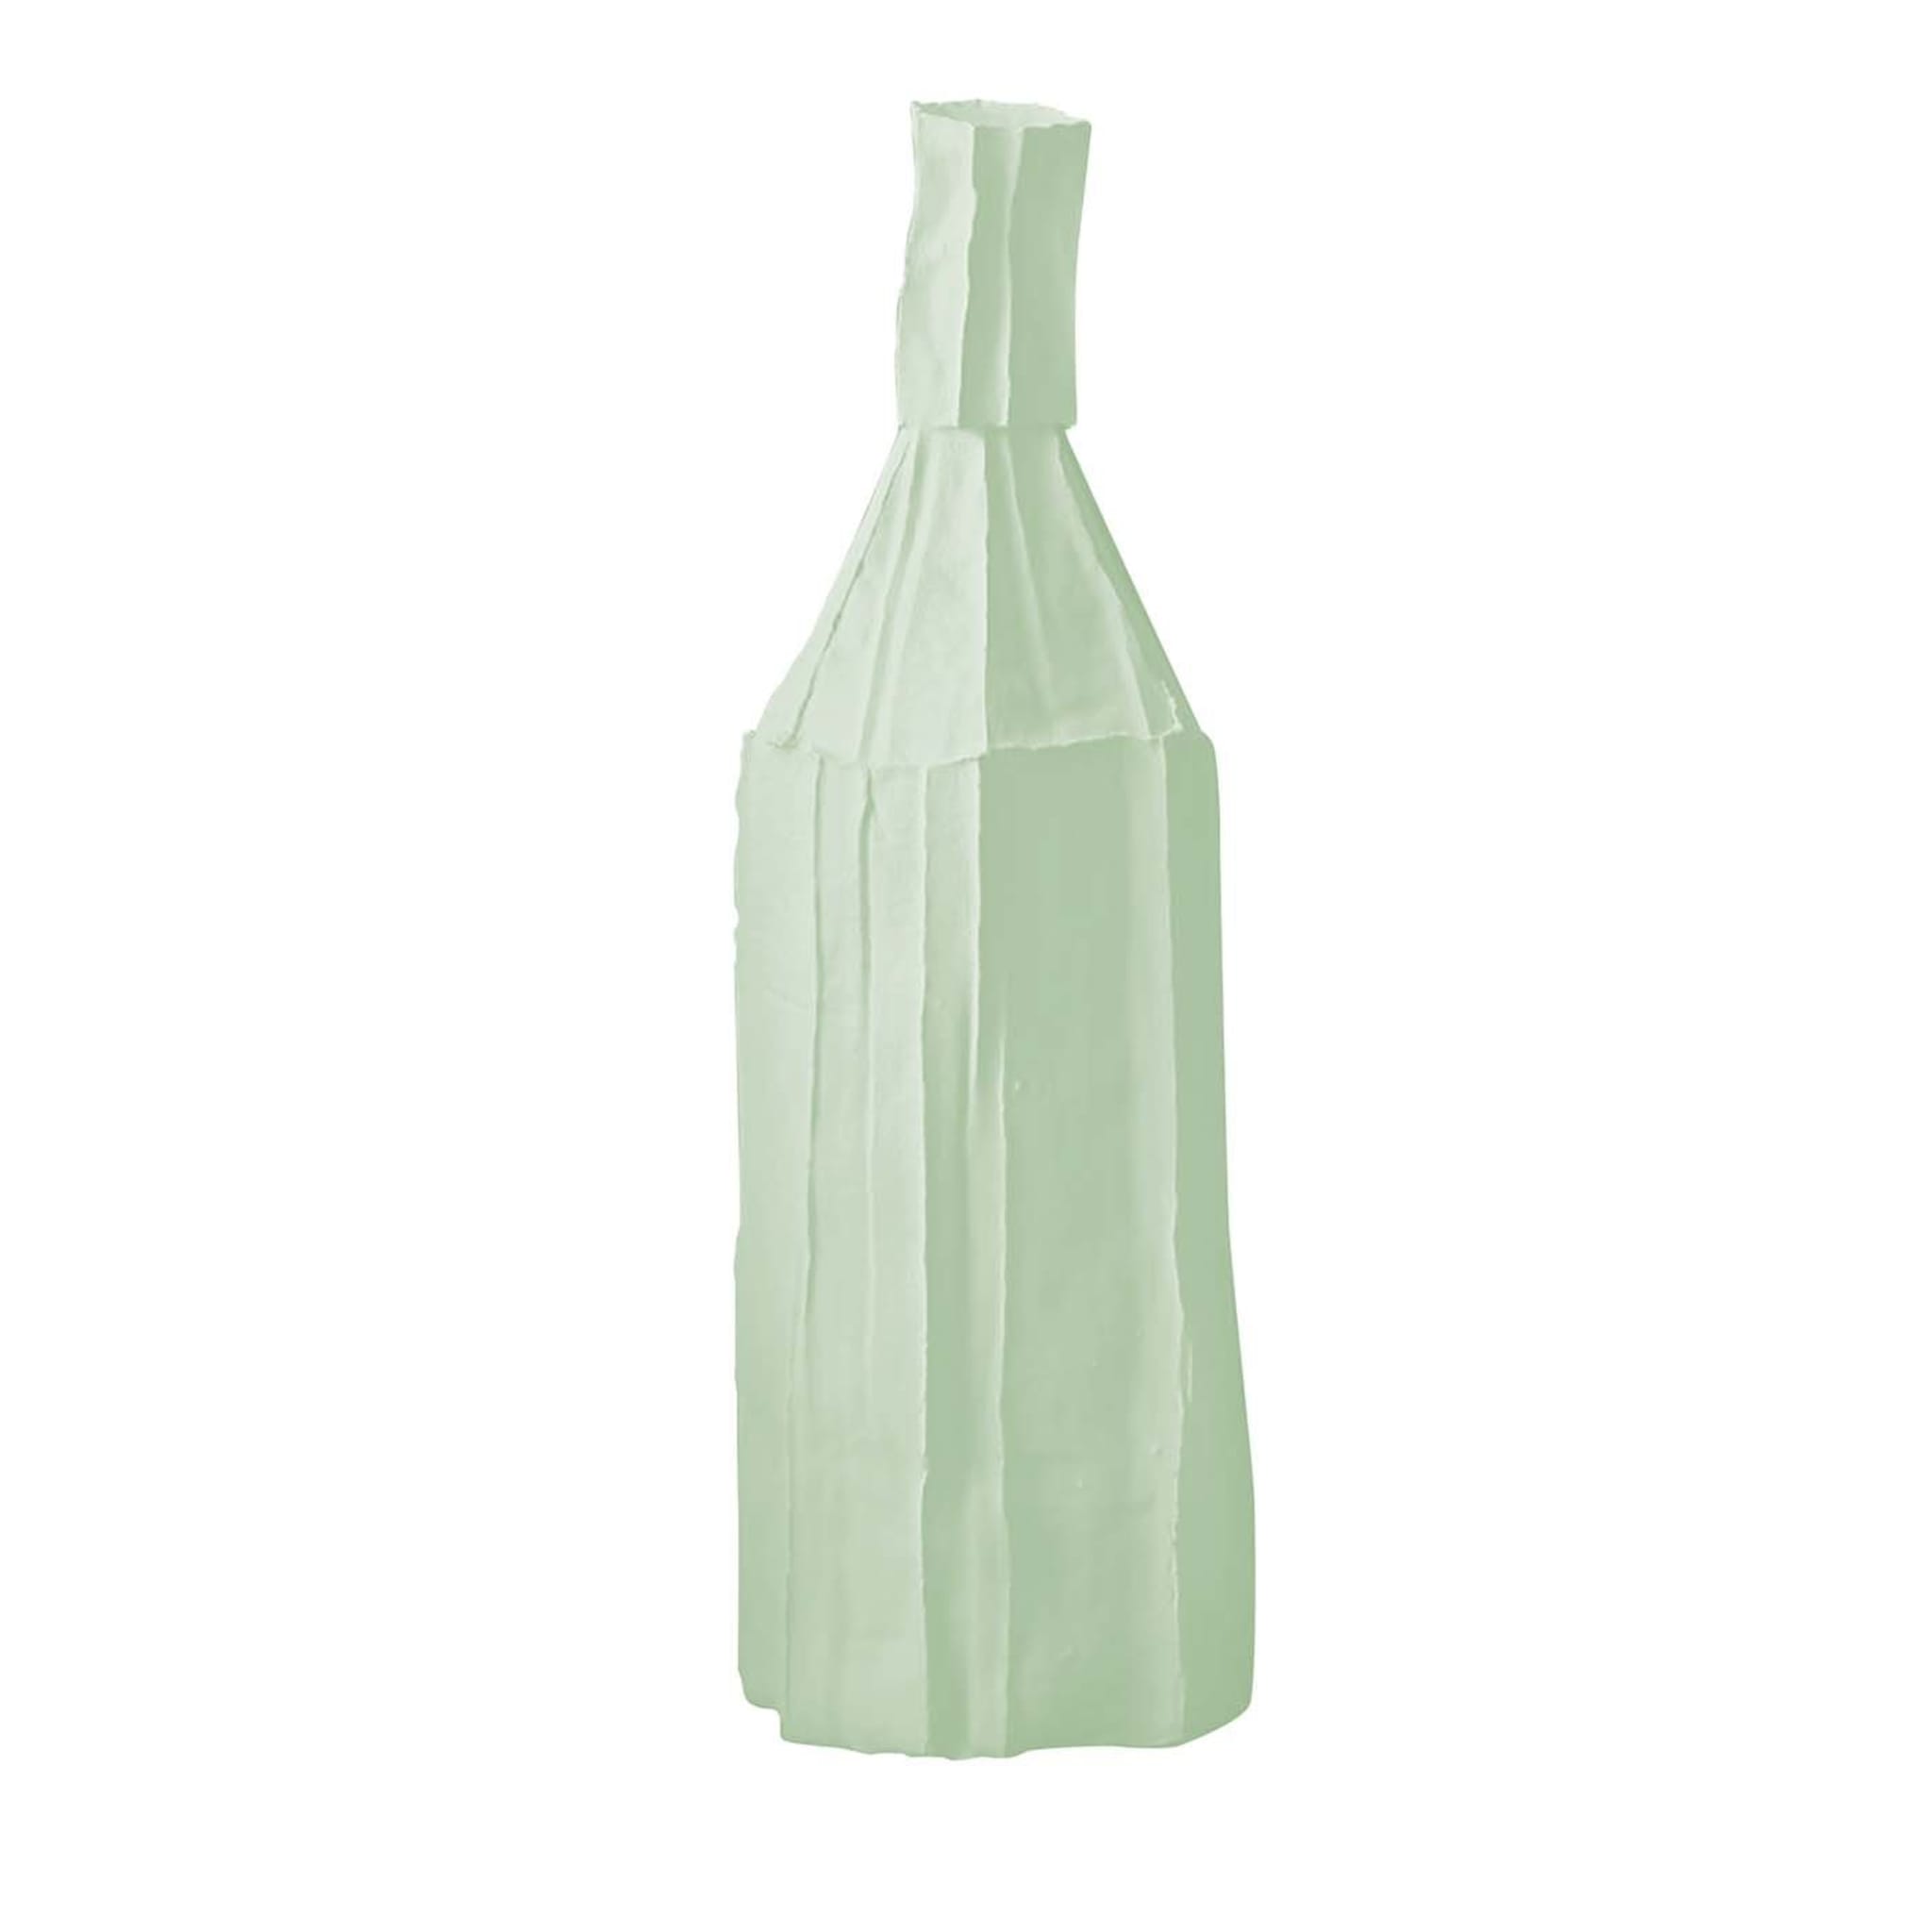 Bottiglia decorativa Cartocci verde menta chiaro - Vista principale